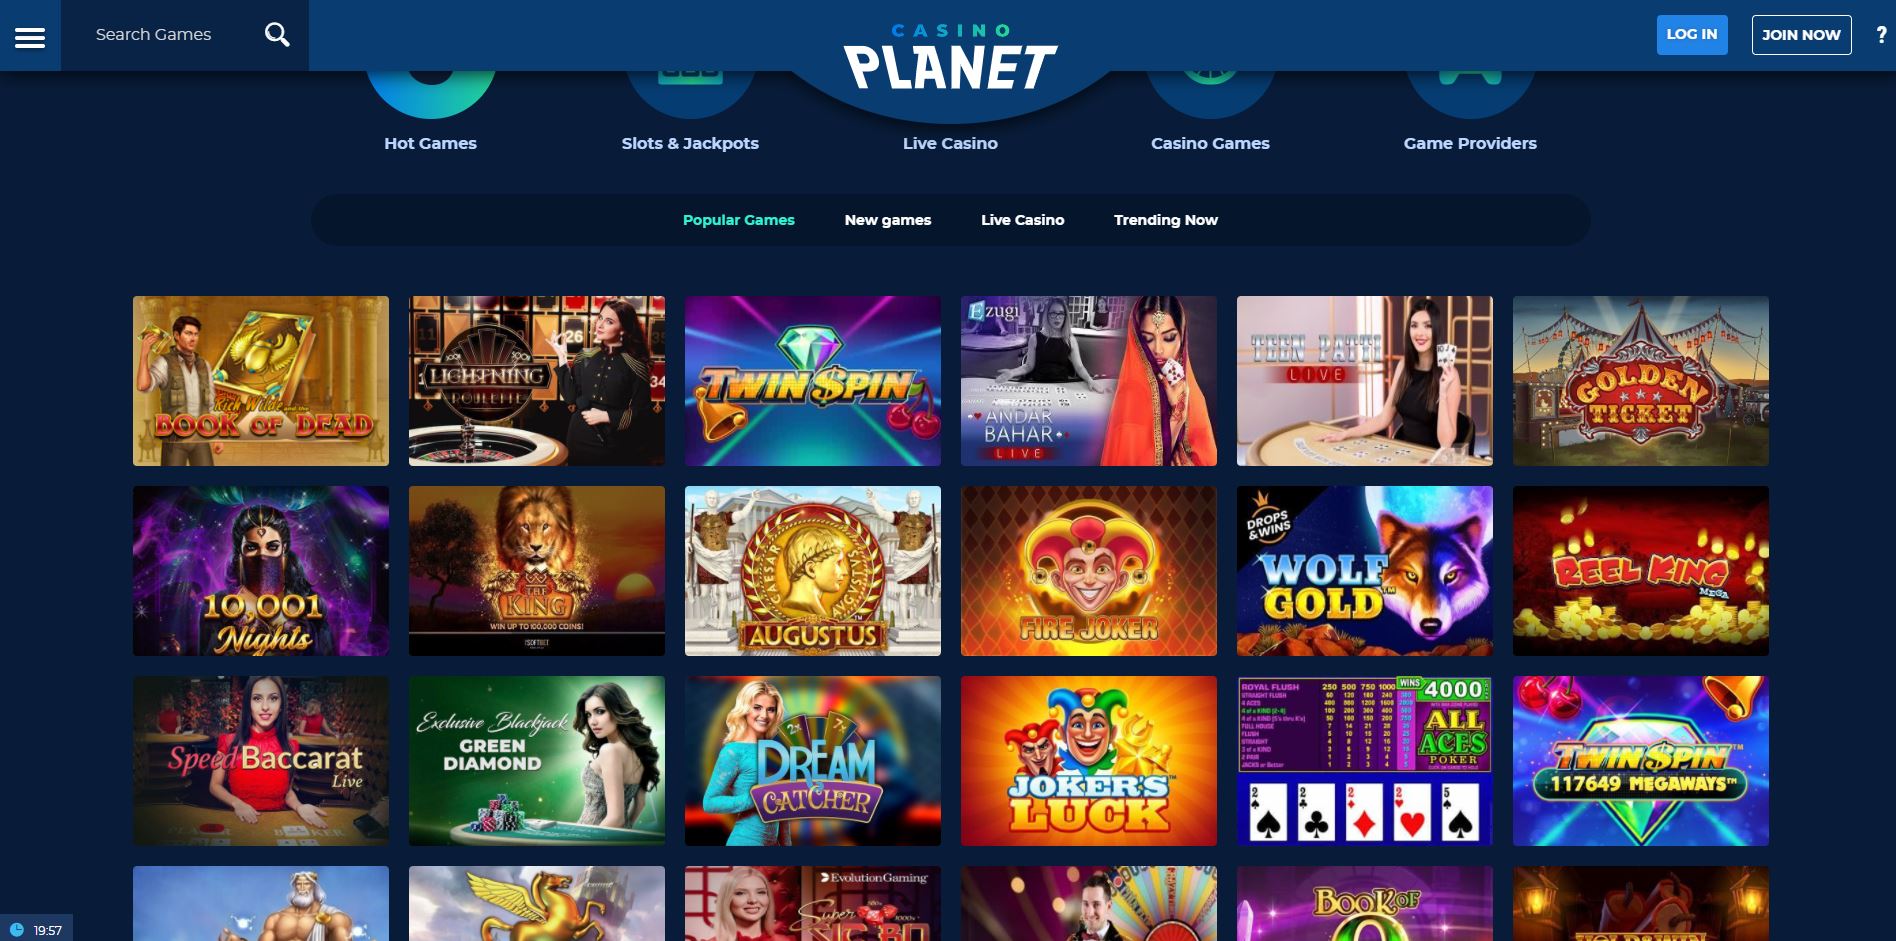 Casino Planet Deutschland Review